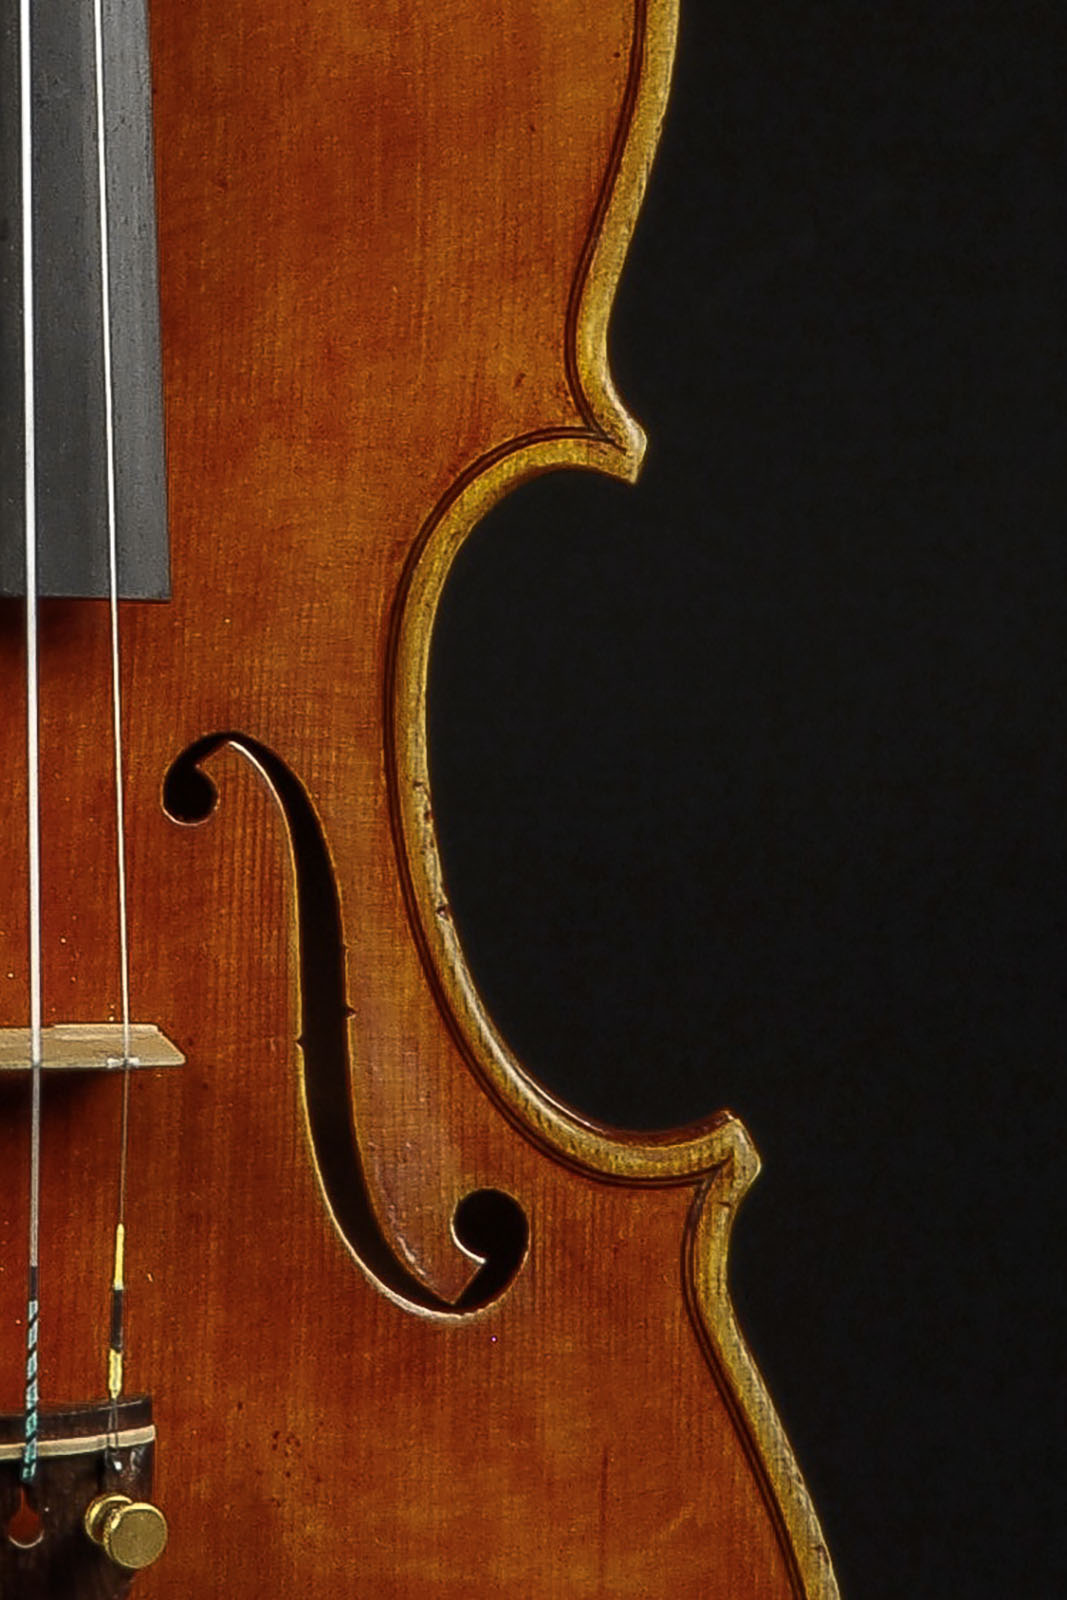 Antonio Stradivari Cremona c.1700 “Teatro Ponchielli“ - Image 3